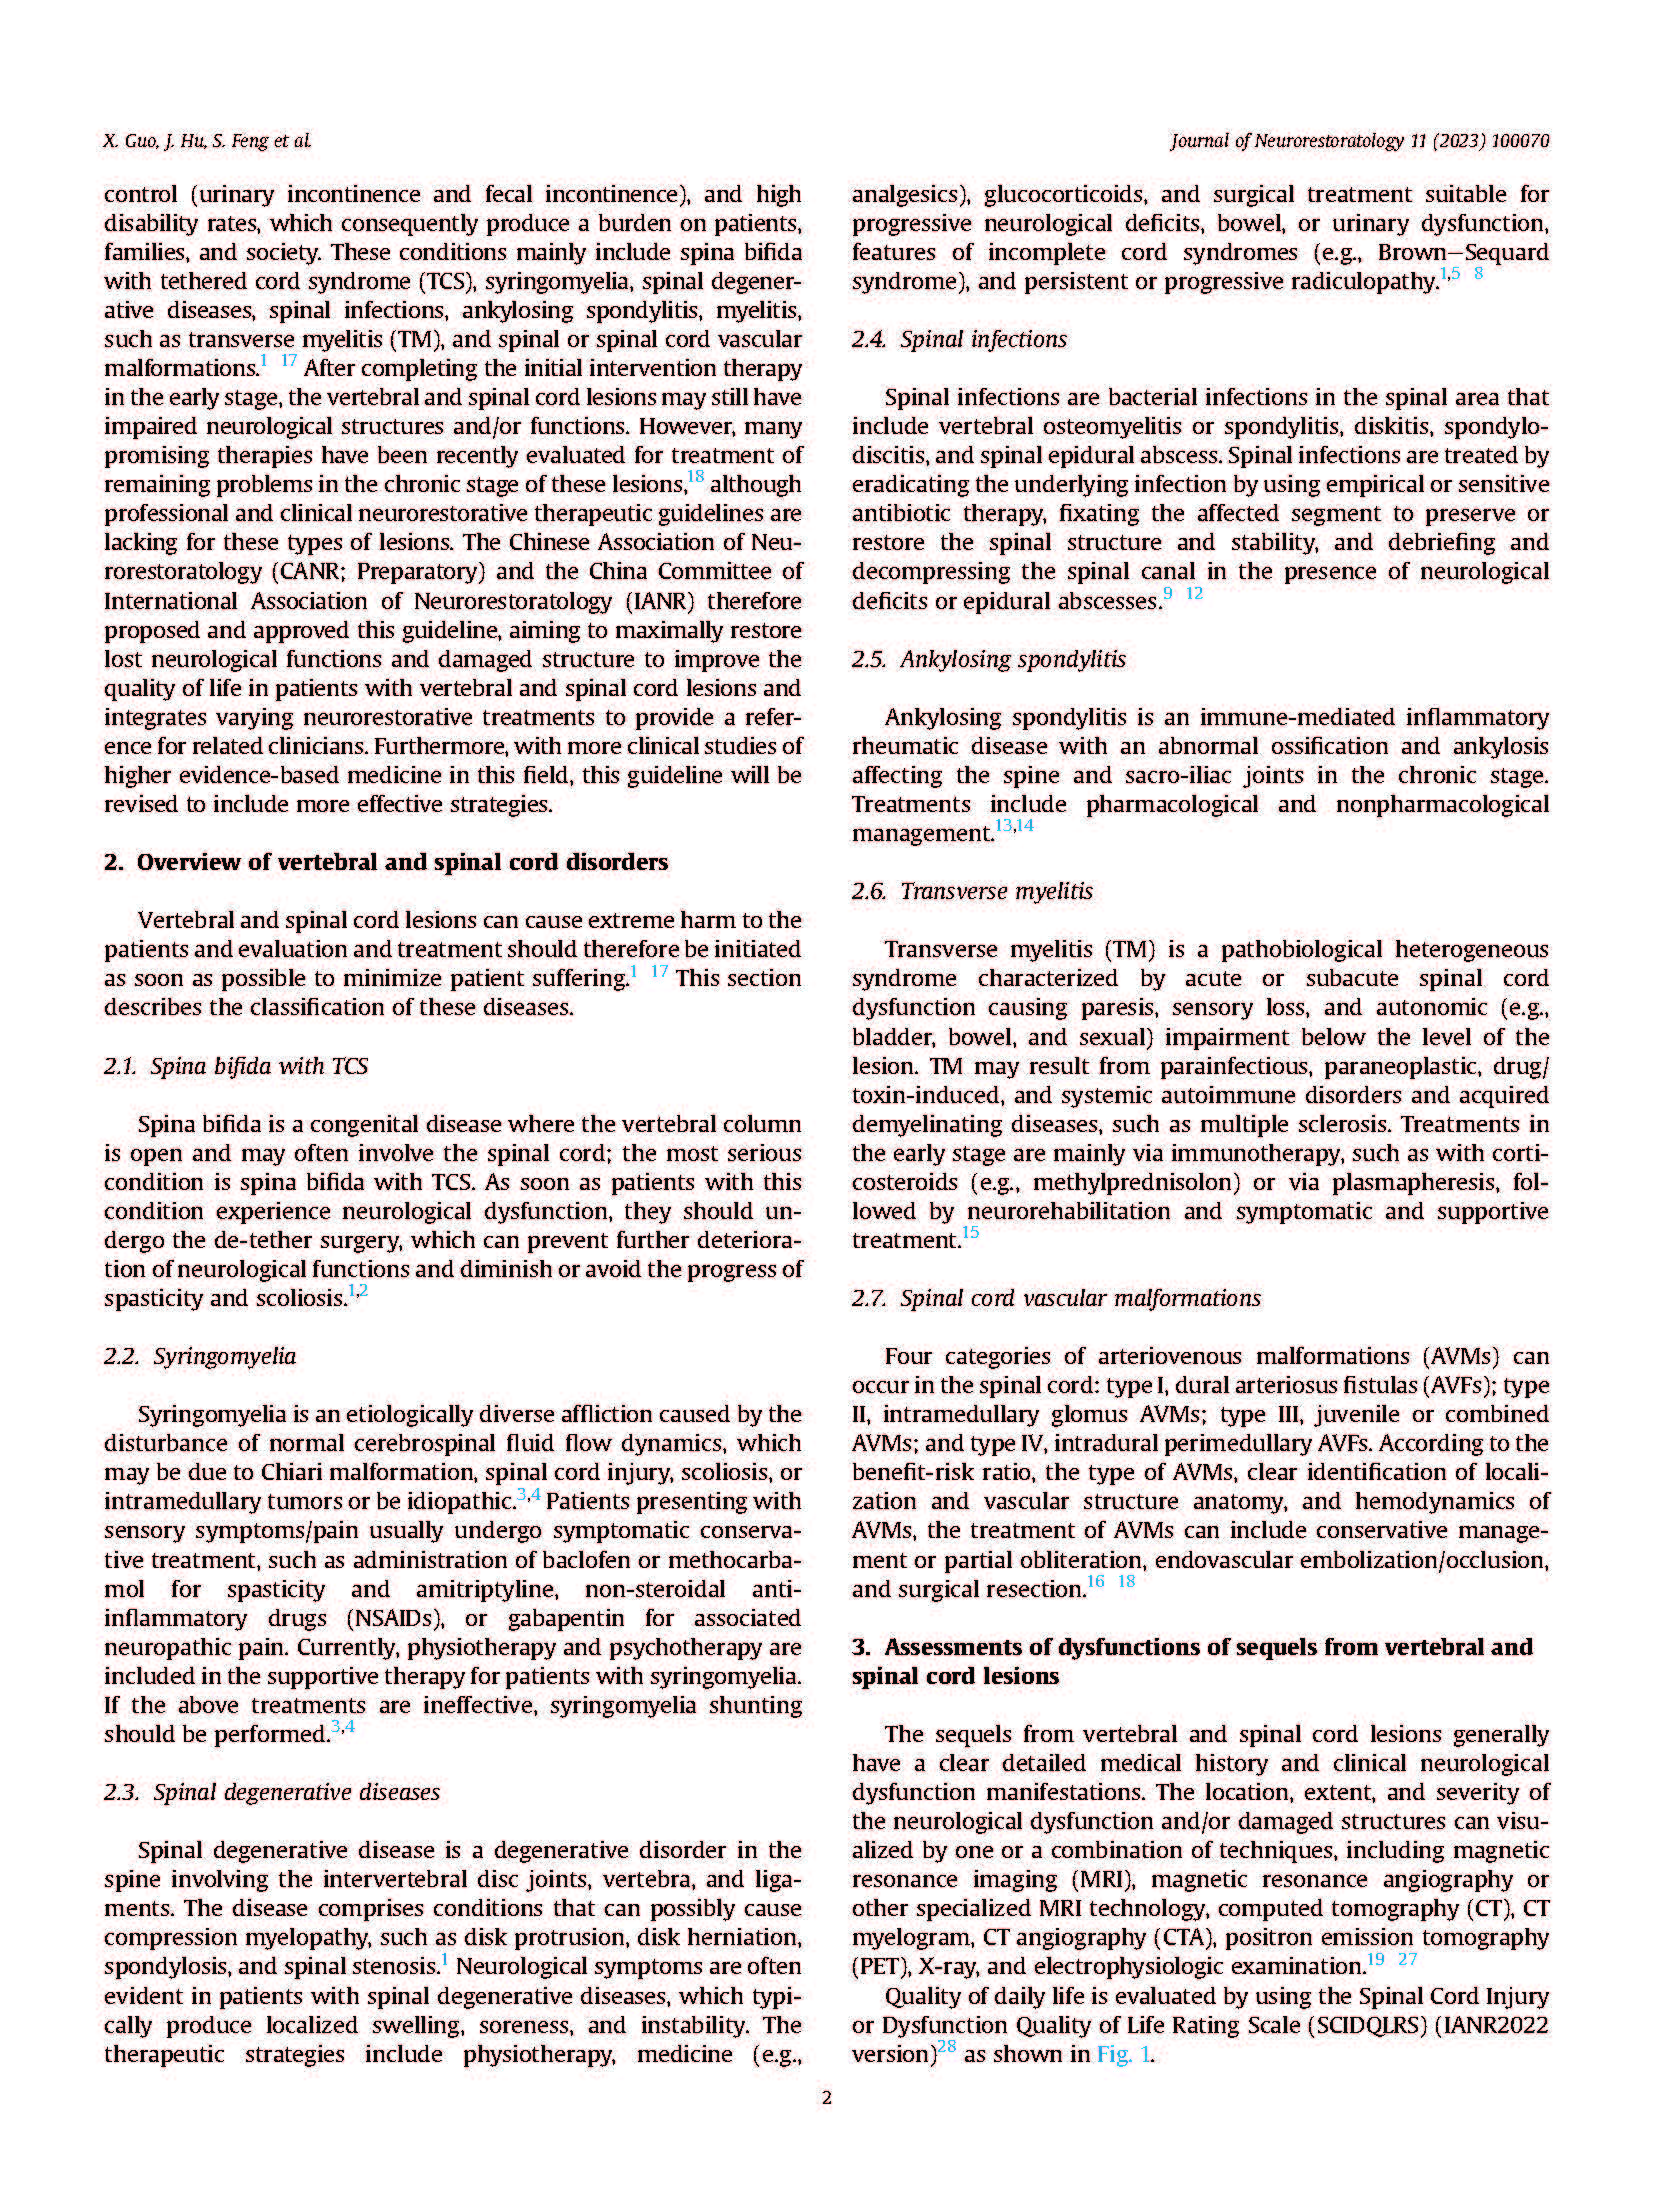 4-代表性学术论文Clinical neurorestorative treatment guidelines for neurological_页面_2.jpg